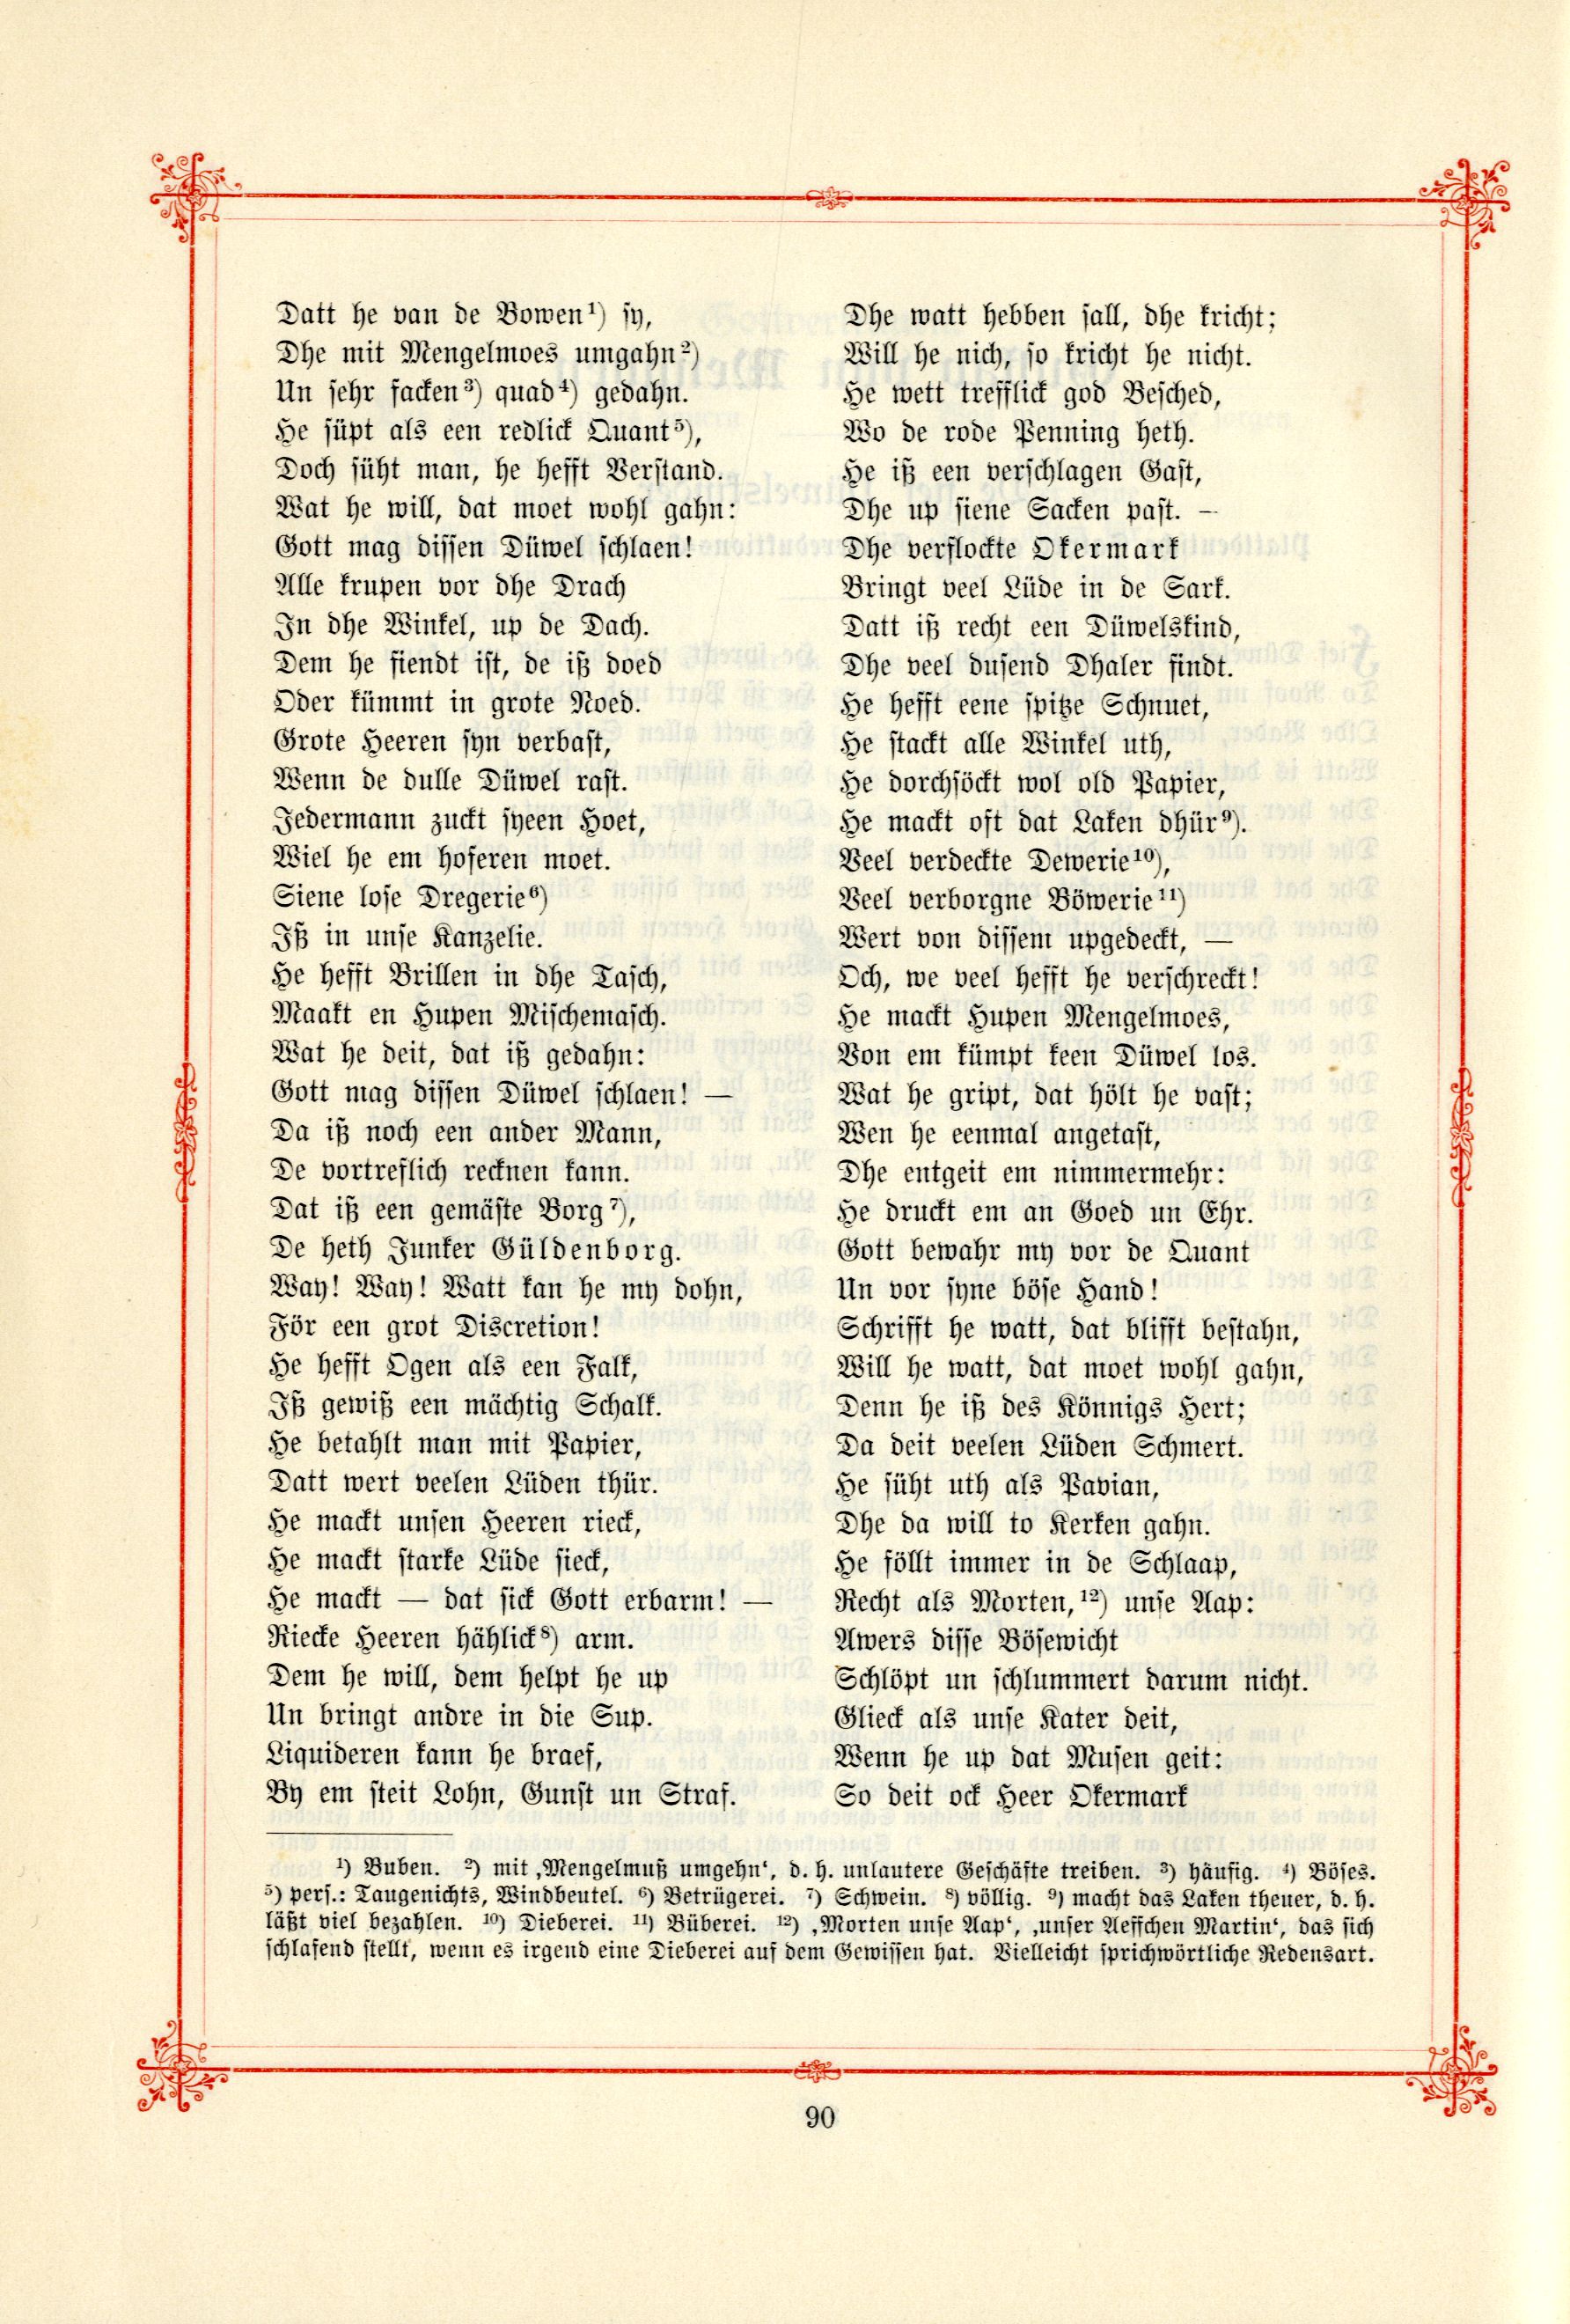 Das Baltische Dichterbuch (1895) | 136. (90) Main body of text